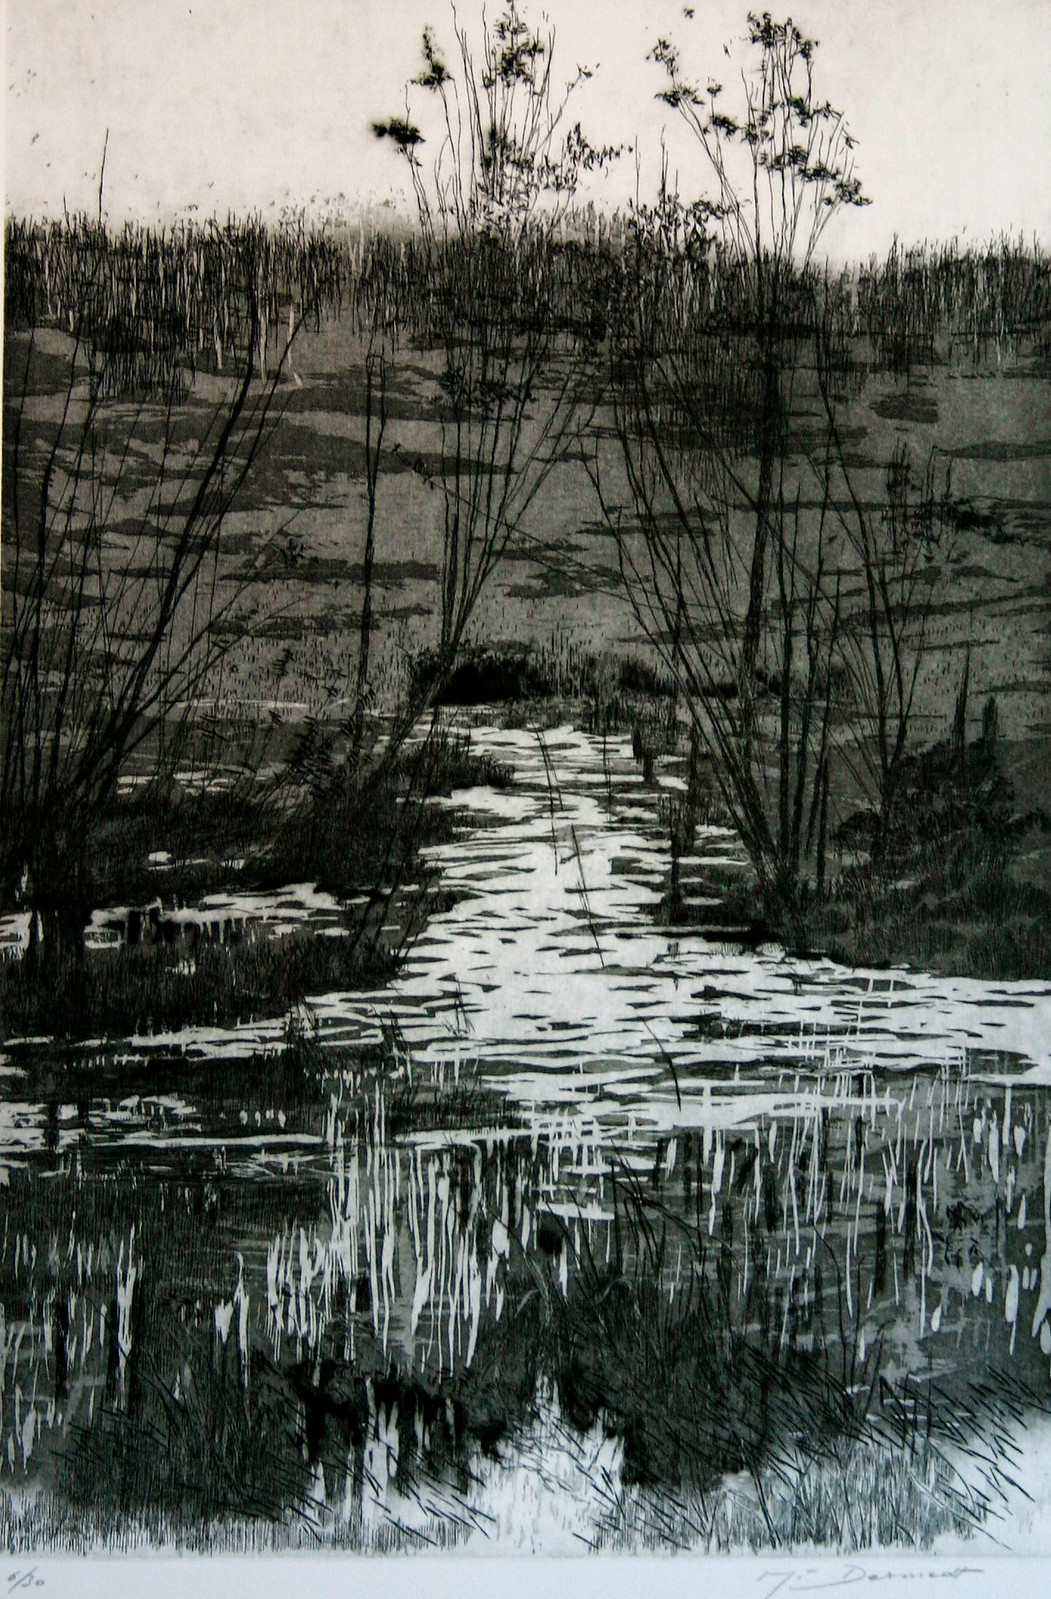 etching planche 267' vue sur la rivière ' 36,5 x 24,5 cm. gravure à l'eau-forte et aquatinte.